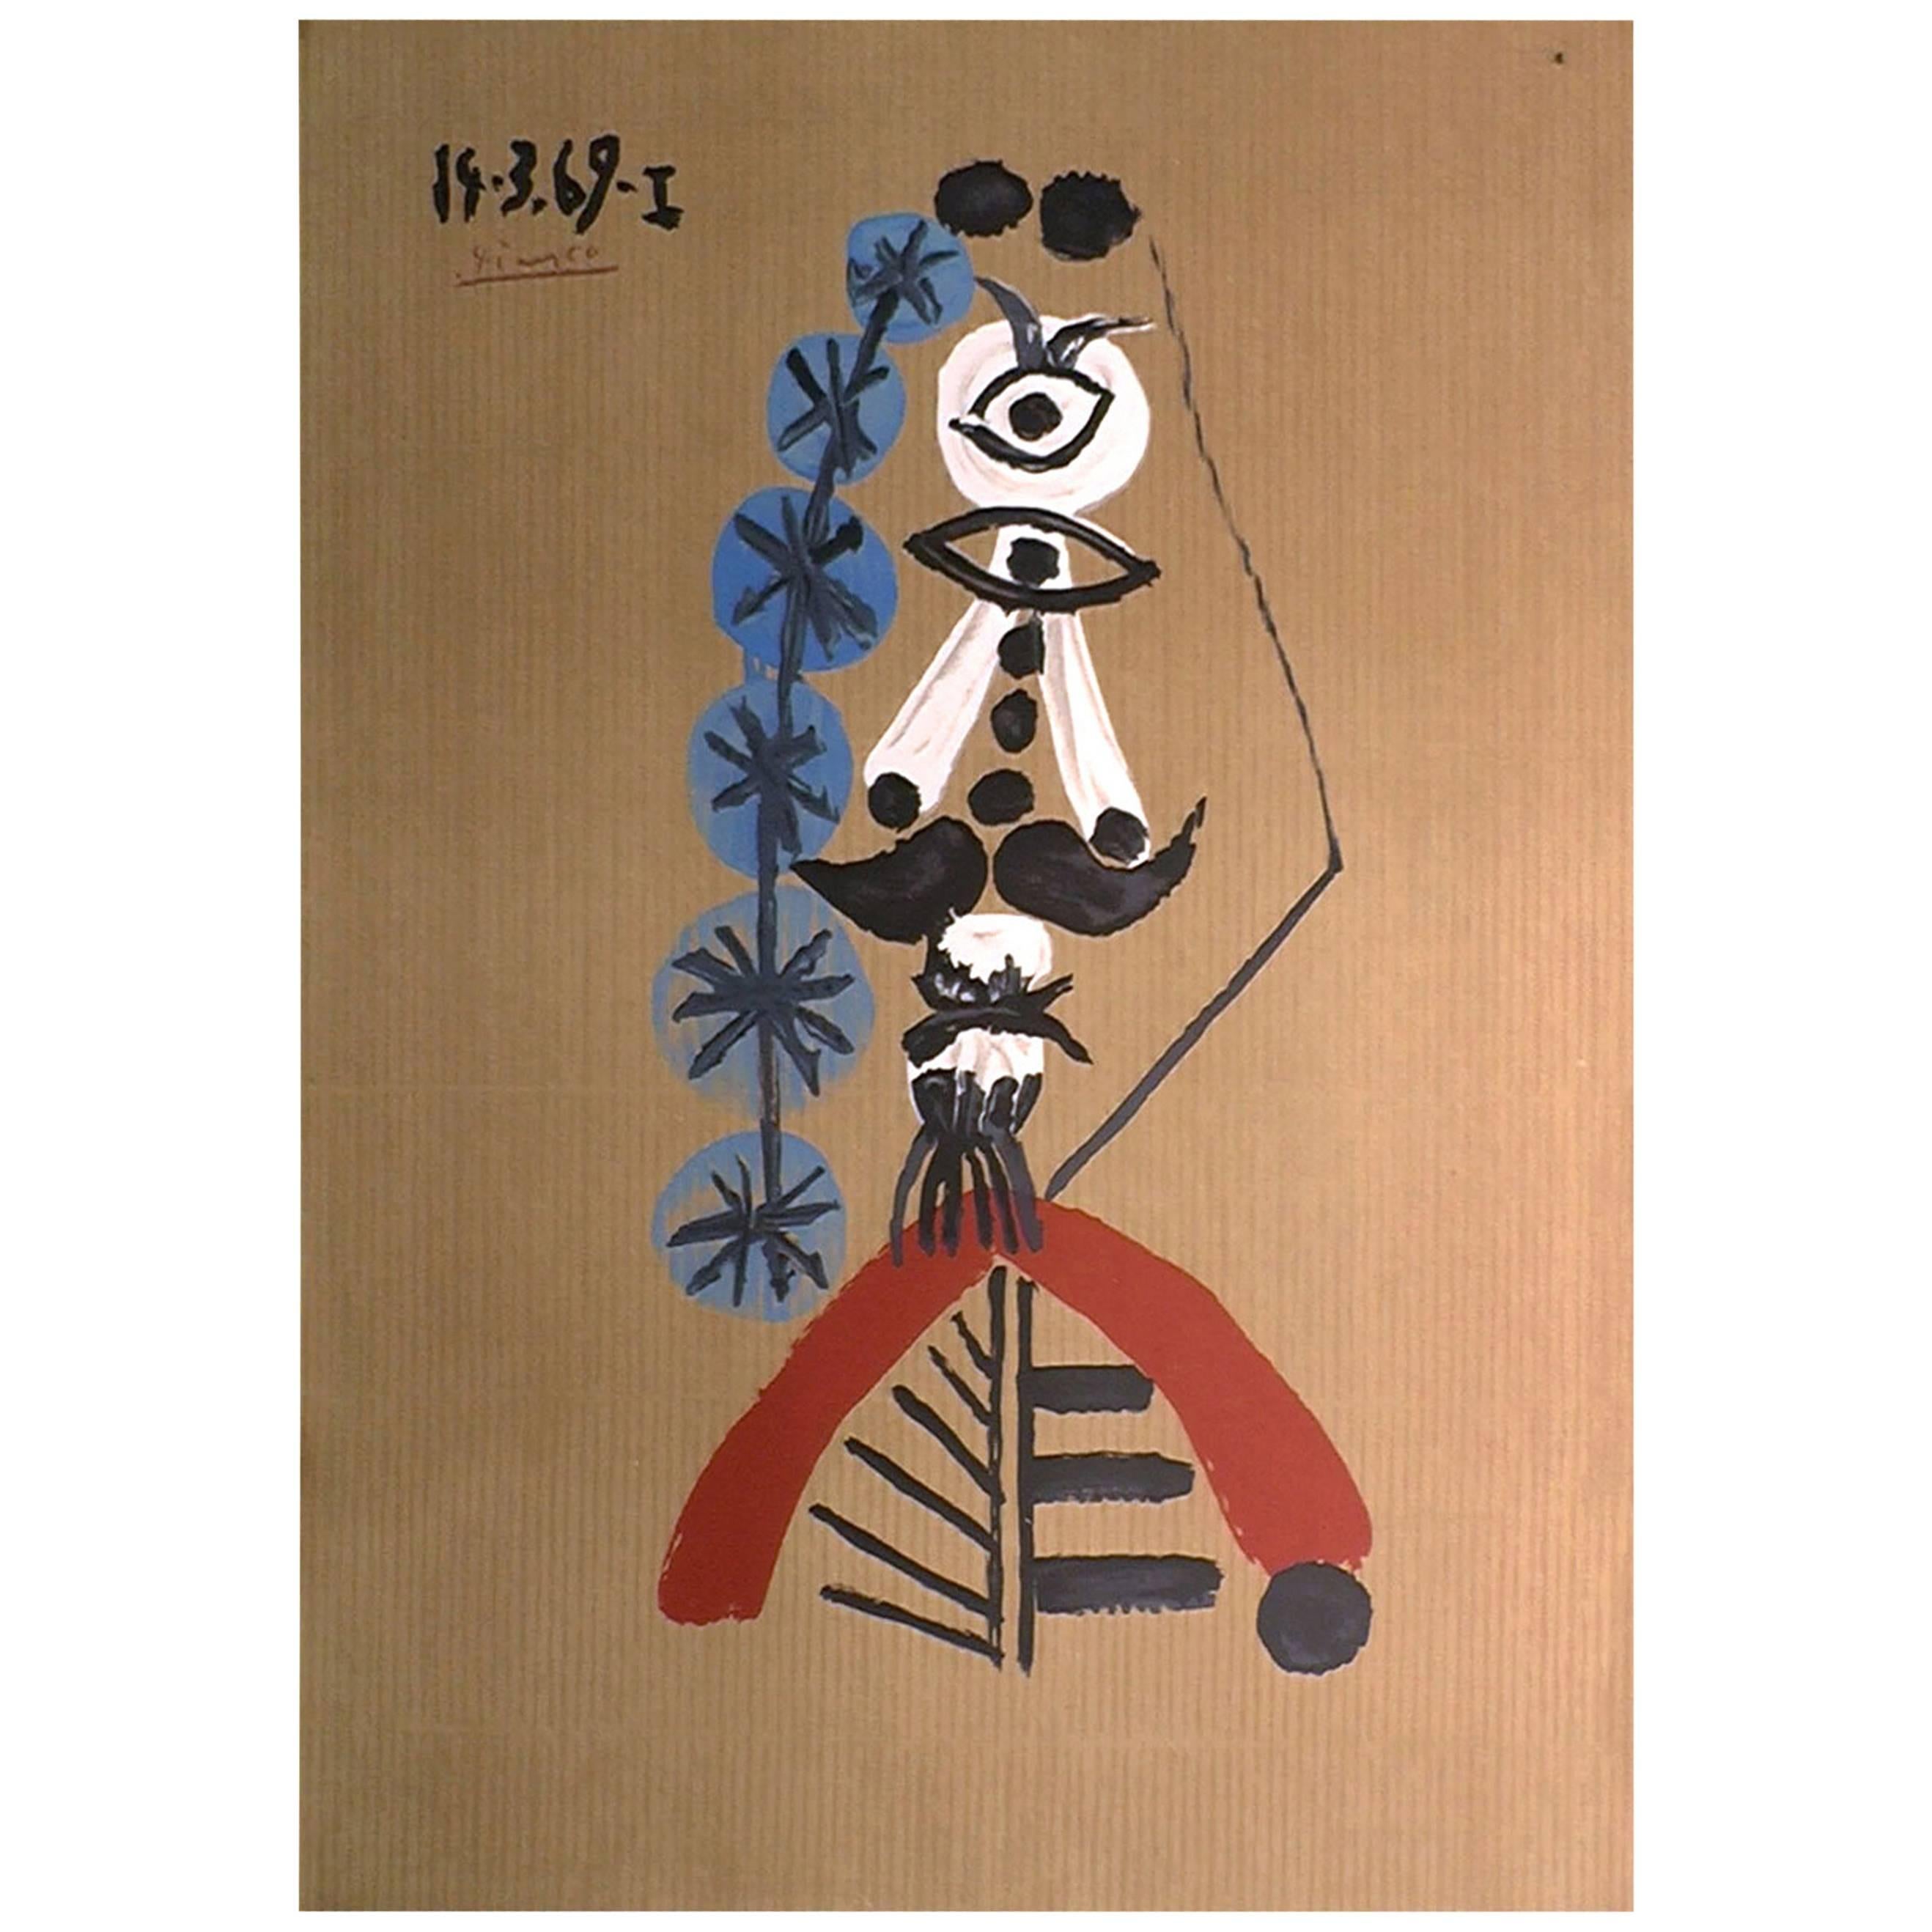 Lithographie originale signée et datée de Portrait Imaginaire de Picasso:: France:: 1969